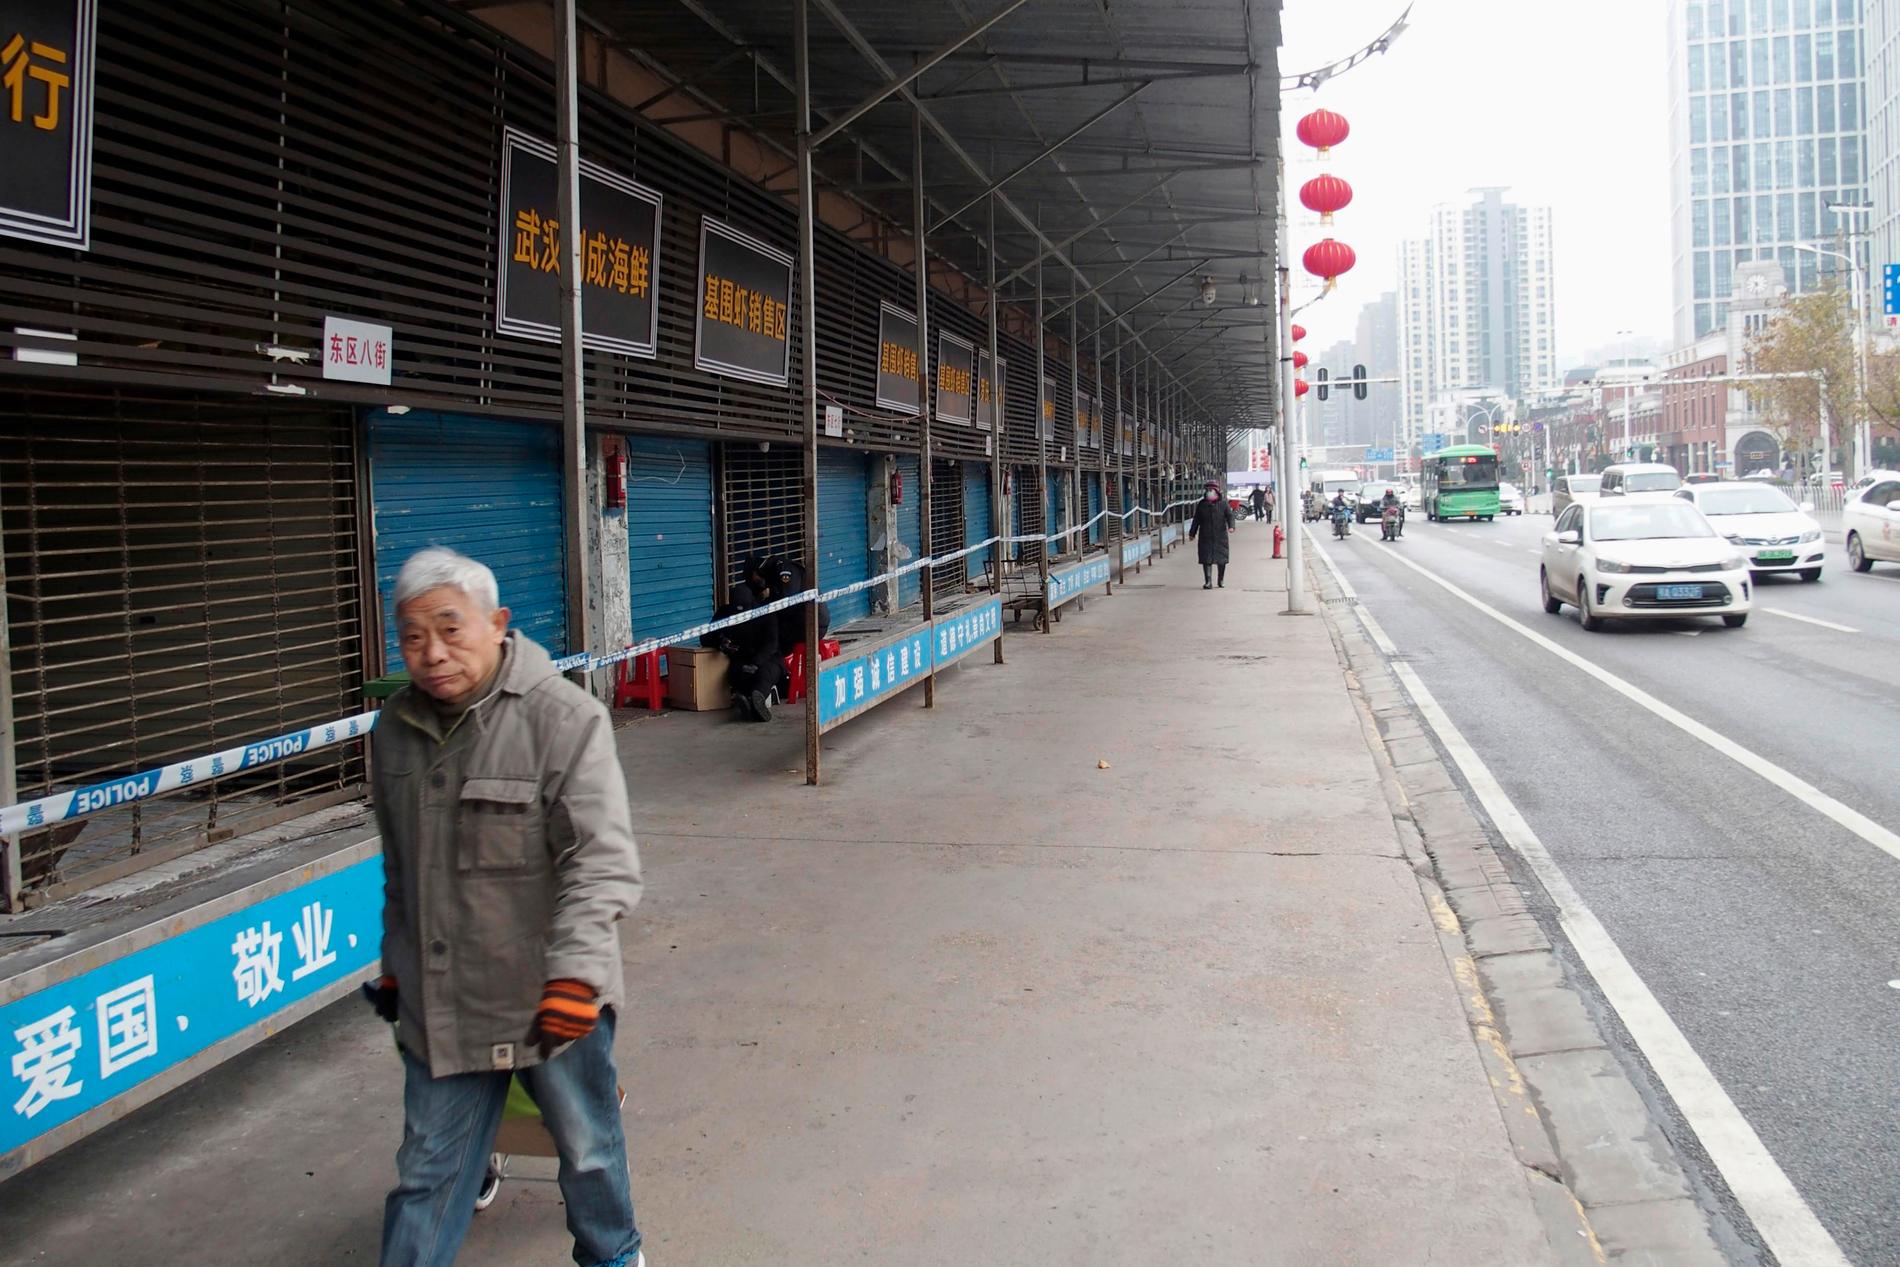 En man passerar den igenbommade marknaden i Wuhan i Kina, där utbrottet av det sarsliknande viruset tros ha börjat.